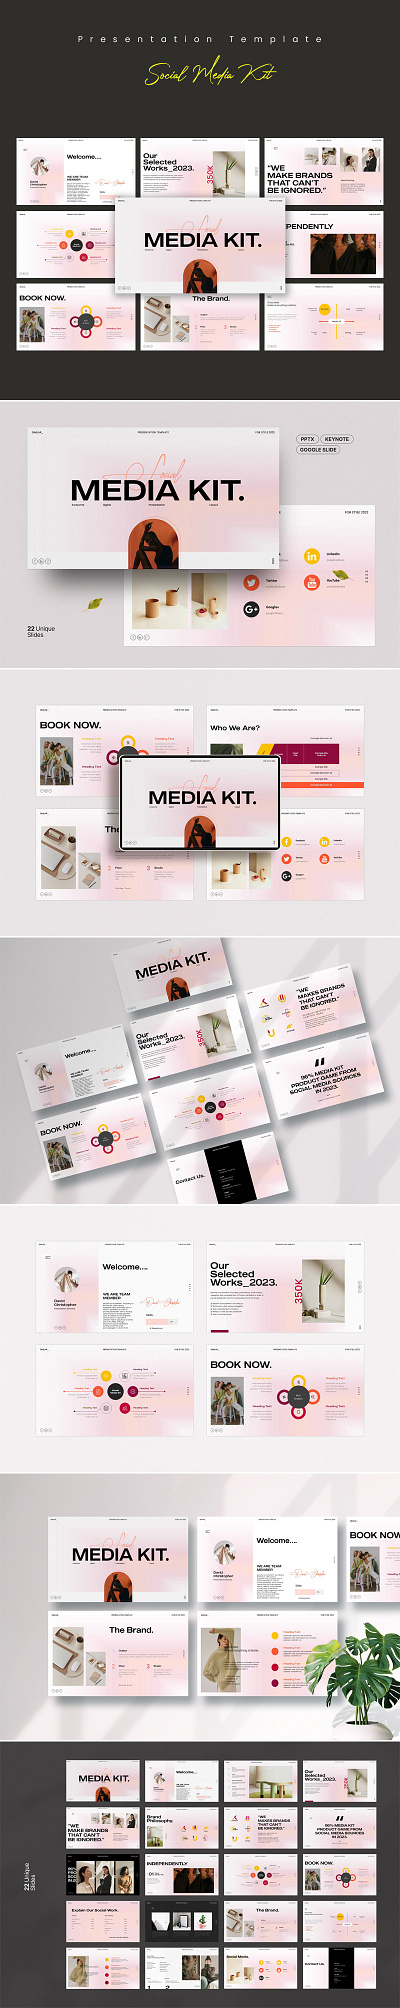 **Social Media Kit Presentation Template** brand branding corporate design graphic design guideline illustration kit logo media minimal social social media kit